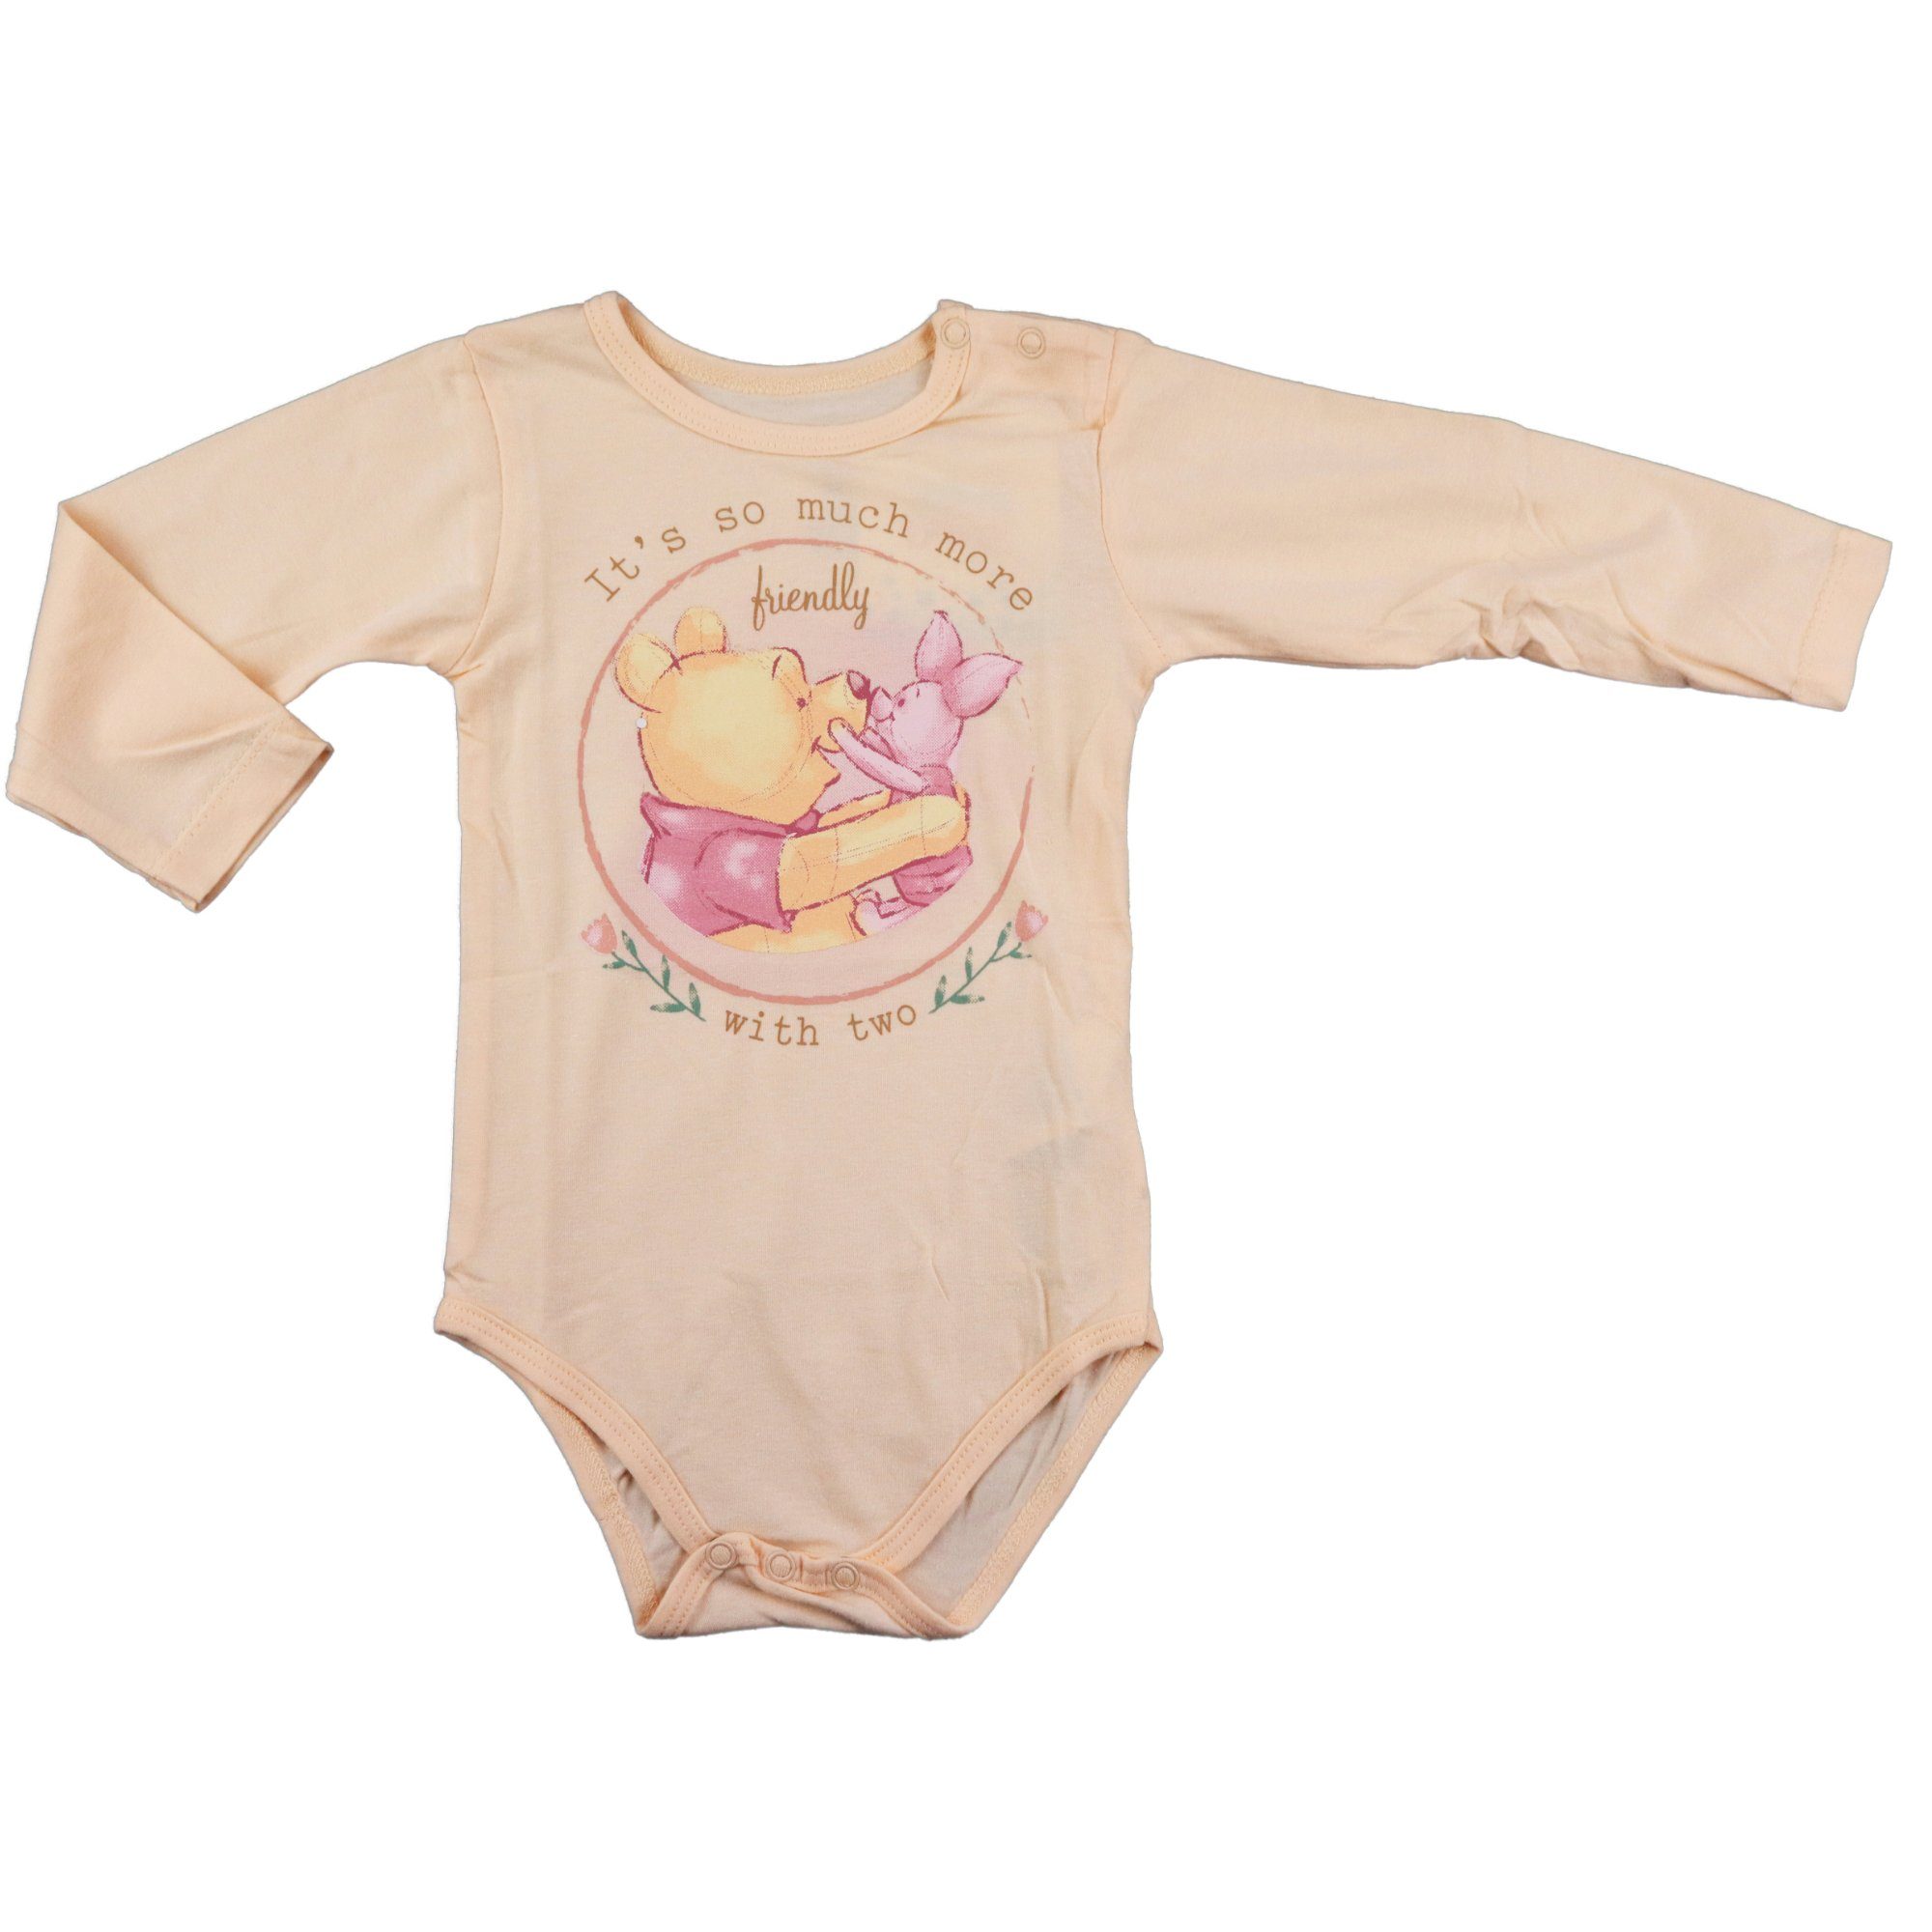 Disney Langarmwickelbody Disney Winnie der Pooh Baby langarm Body Strampler Gr. 68 bis 92 Beige | Shirtbodies